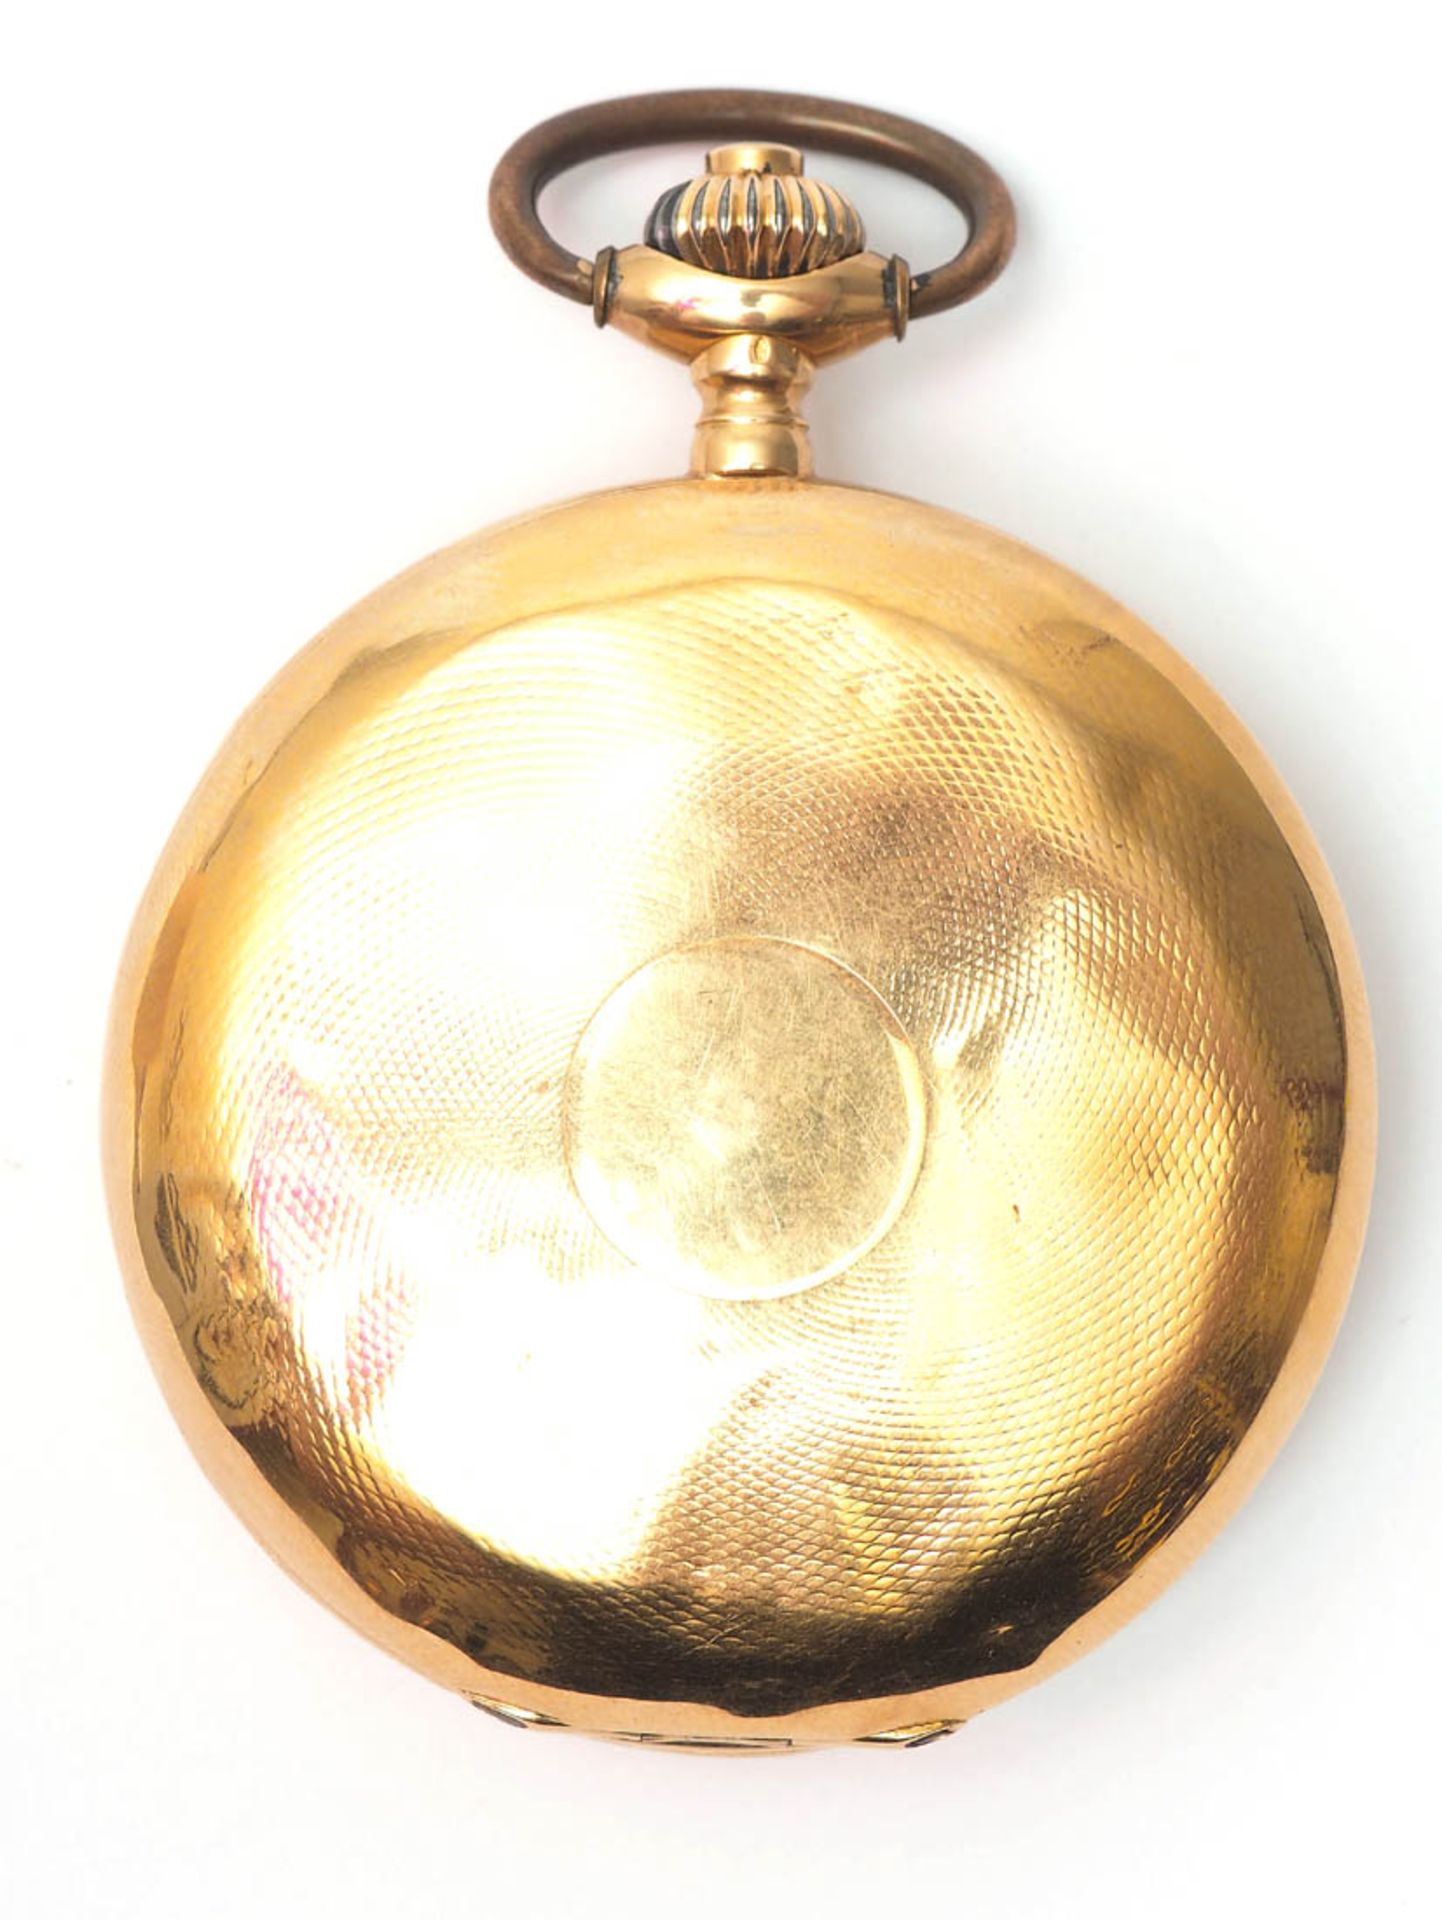 Herrensavonette, Westschweiz, um 1920 Wippen-Chronometer. Fein graviertes Gehäuse, num. 28344 bzw. - Image 2 of 5